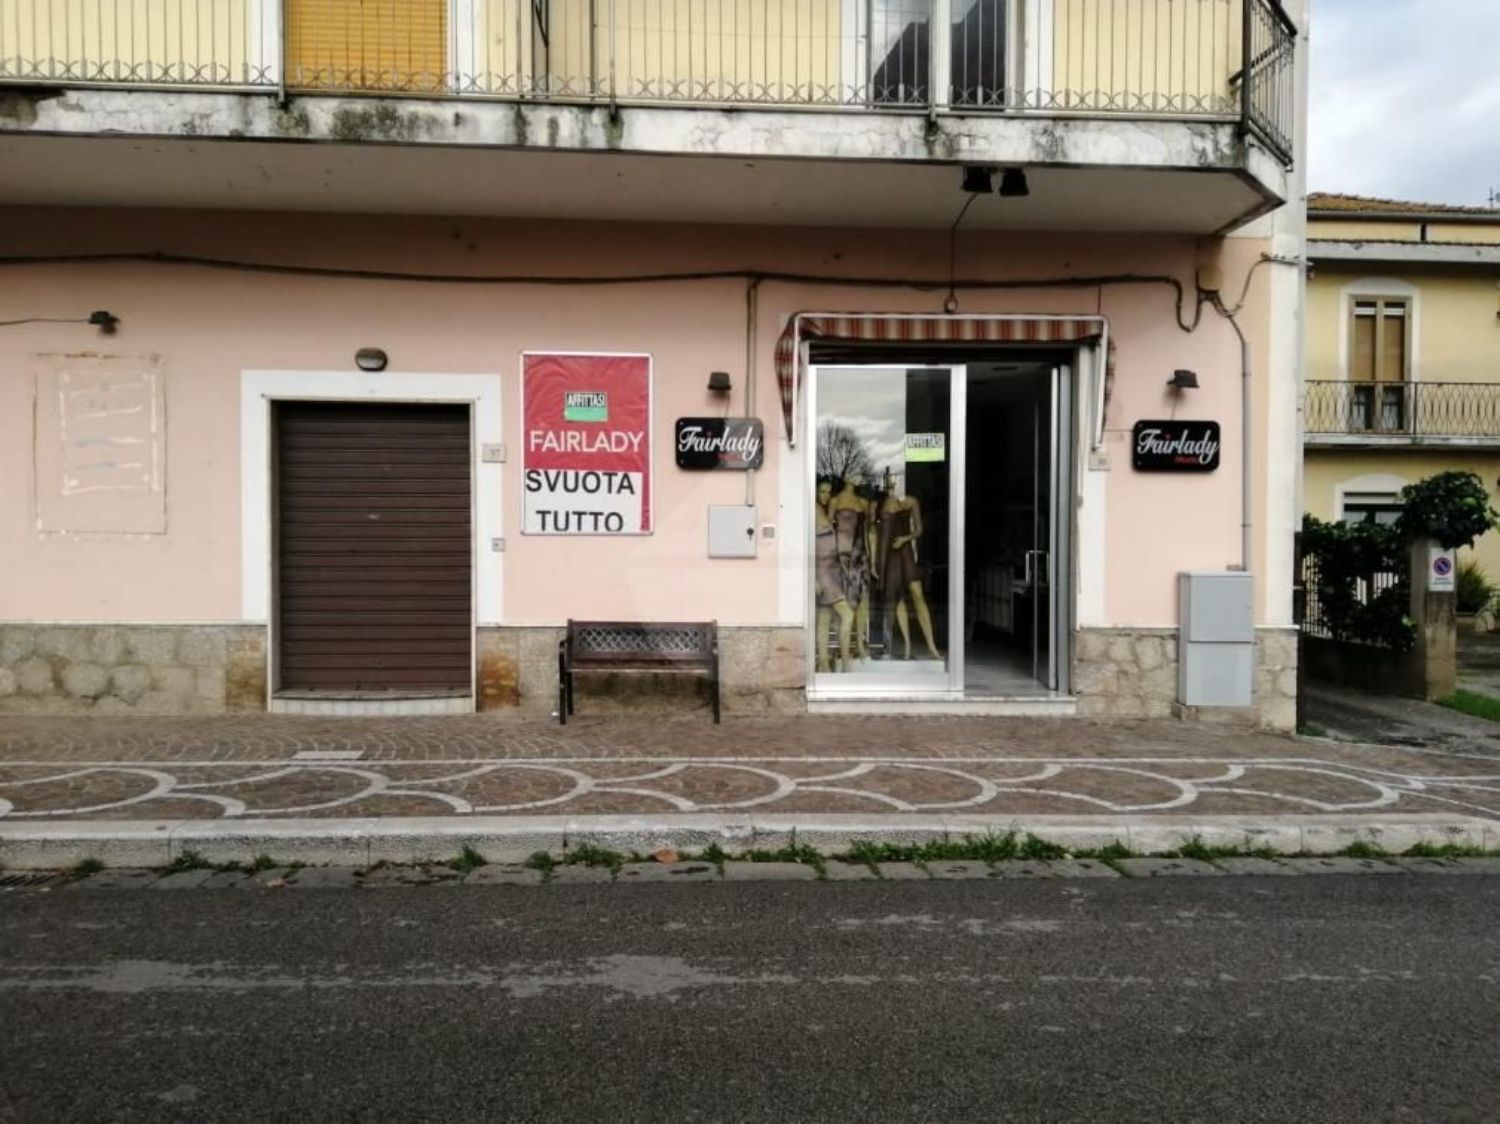 Immobile Commerciale in affitto a Montoro, 9999 locali, prezzo € 350 | PortaleAgenzieImmobiliari.it